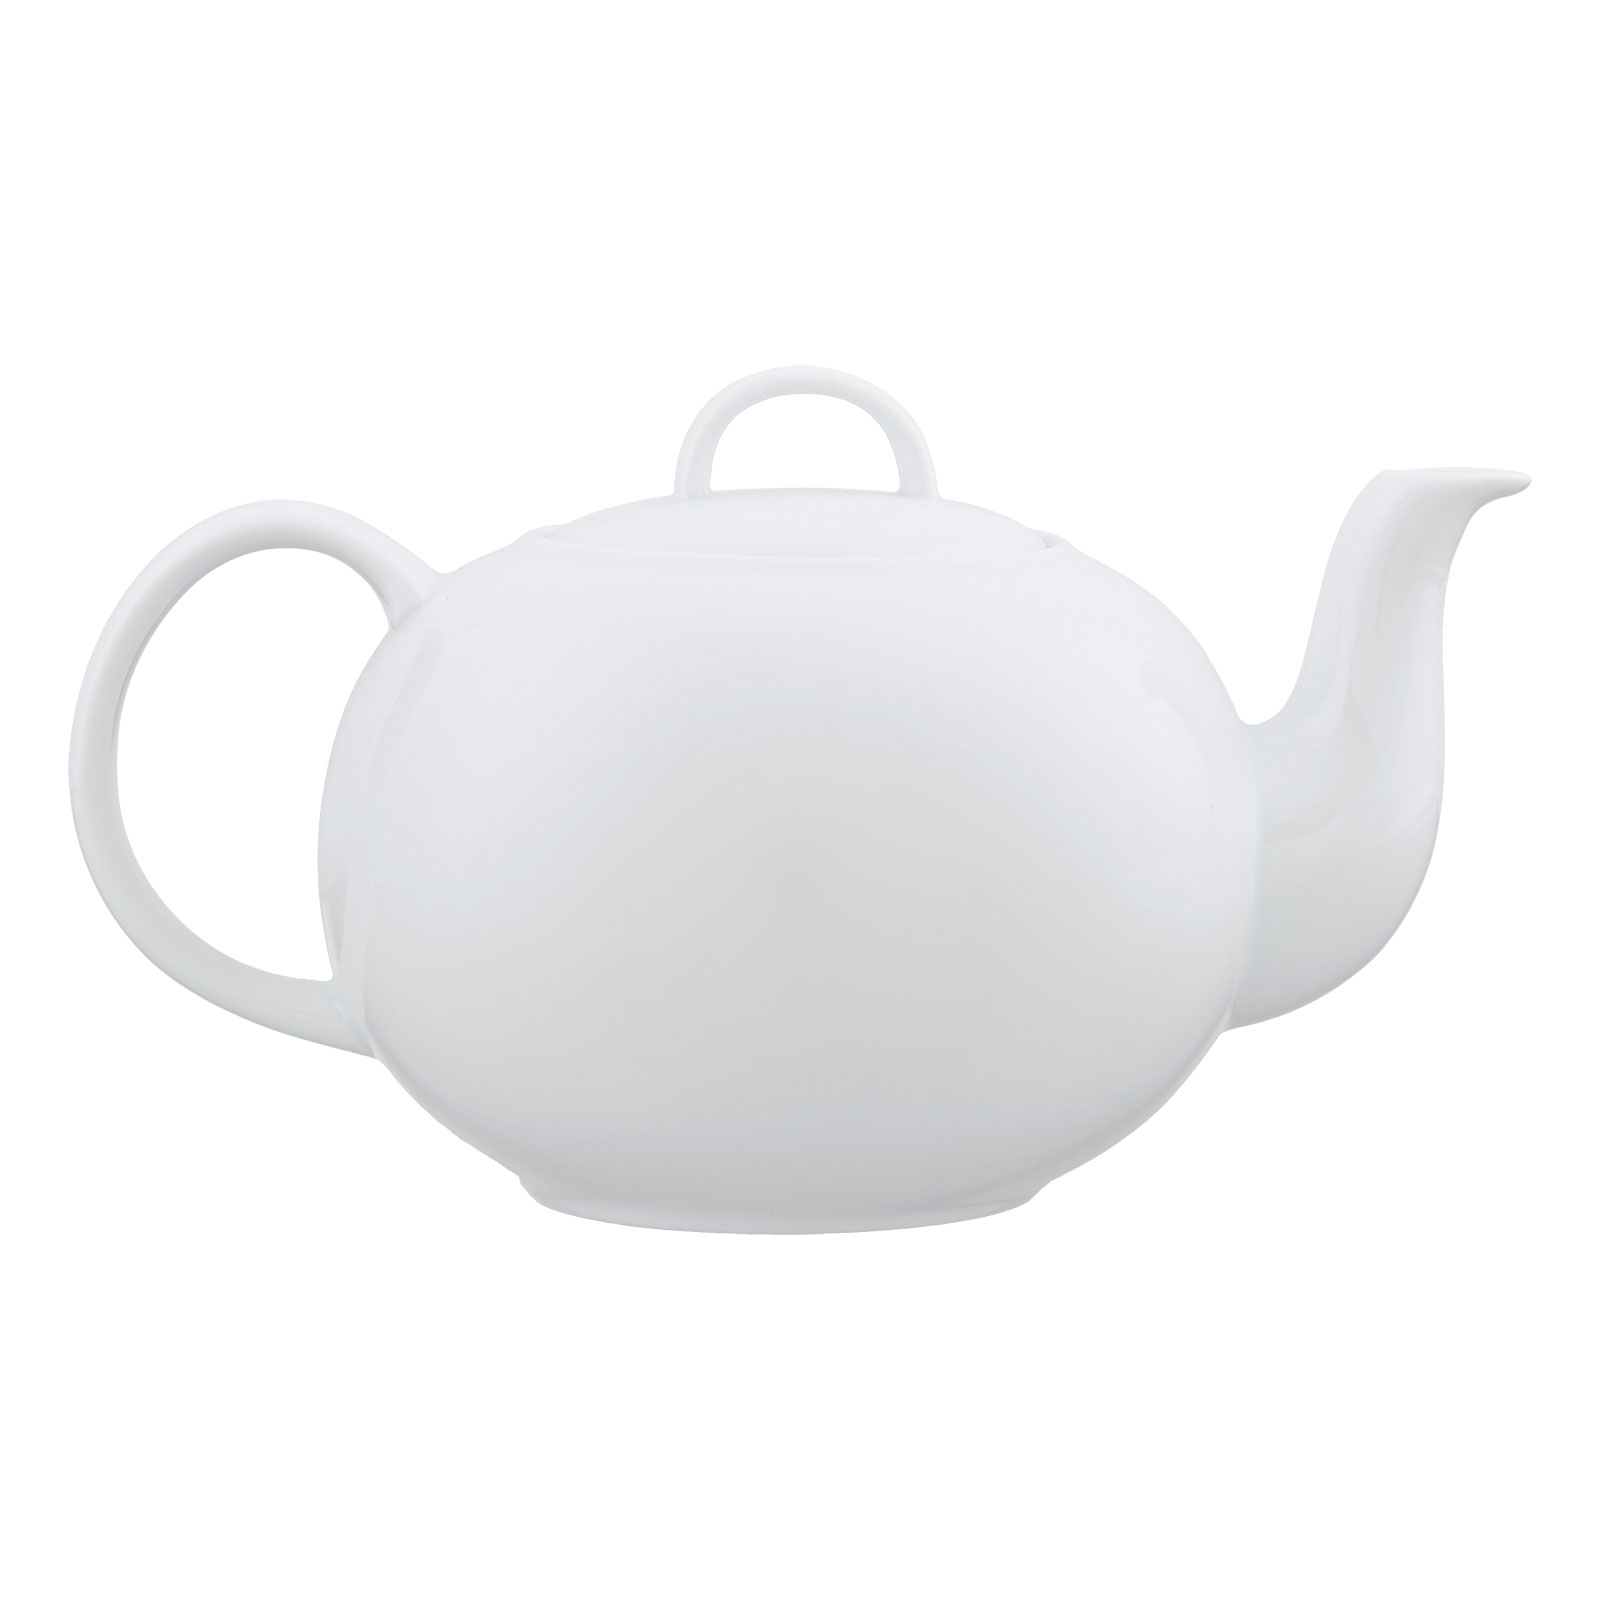 Teekanne Porzellan Weiß 1,2 l von Ronnefeldt